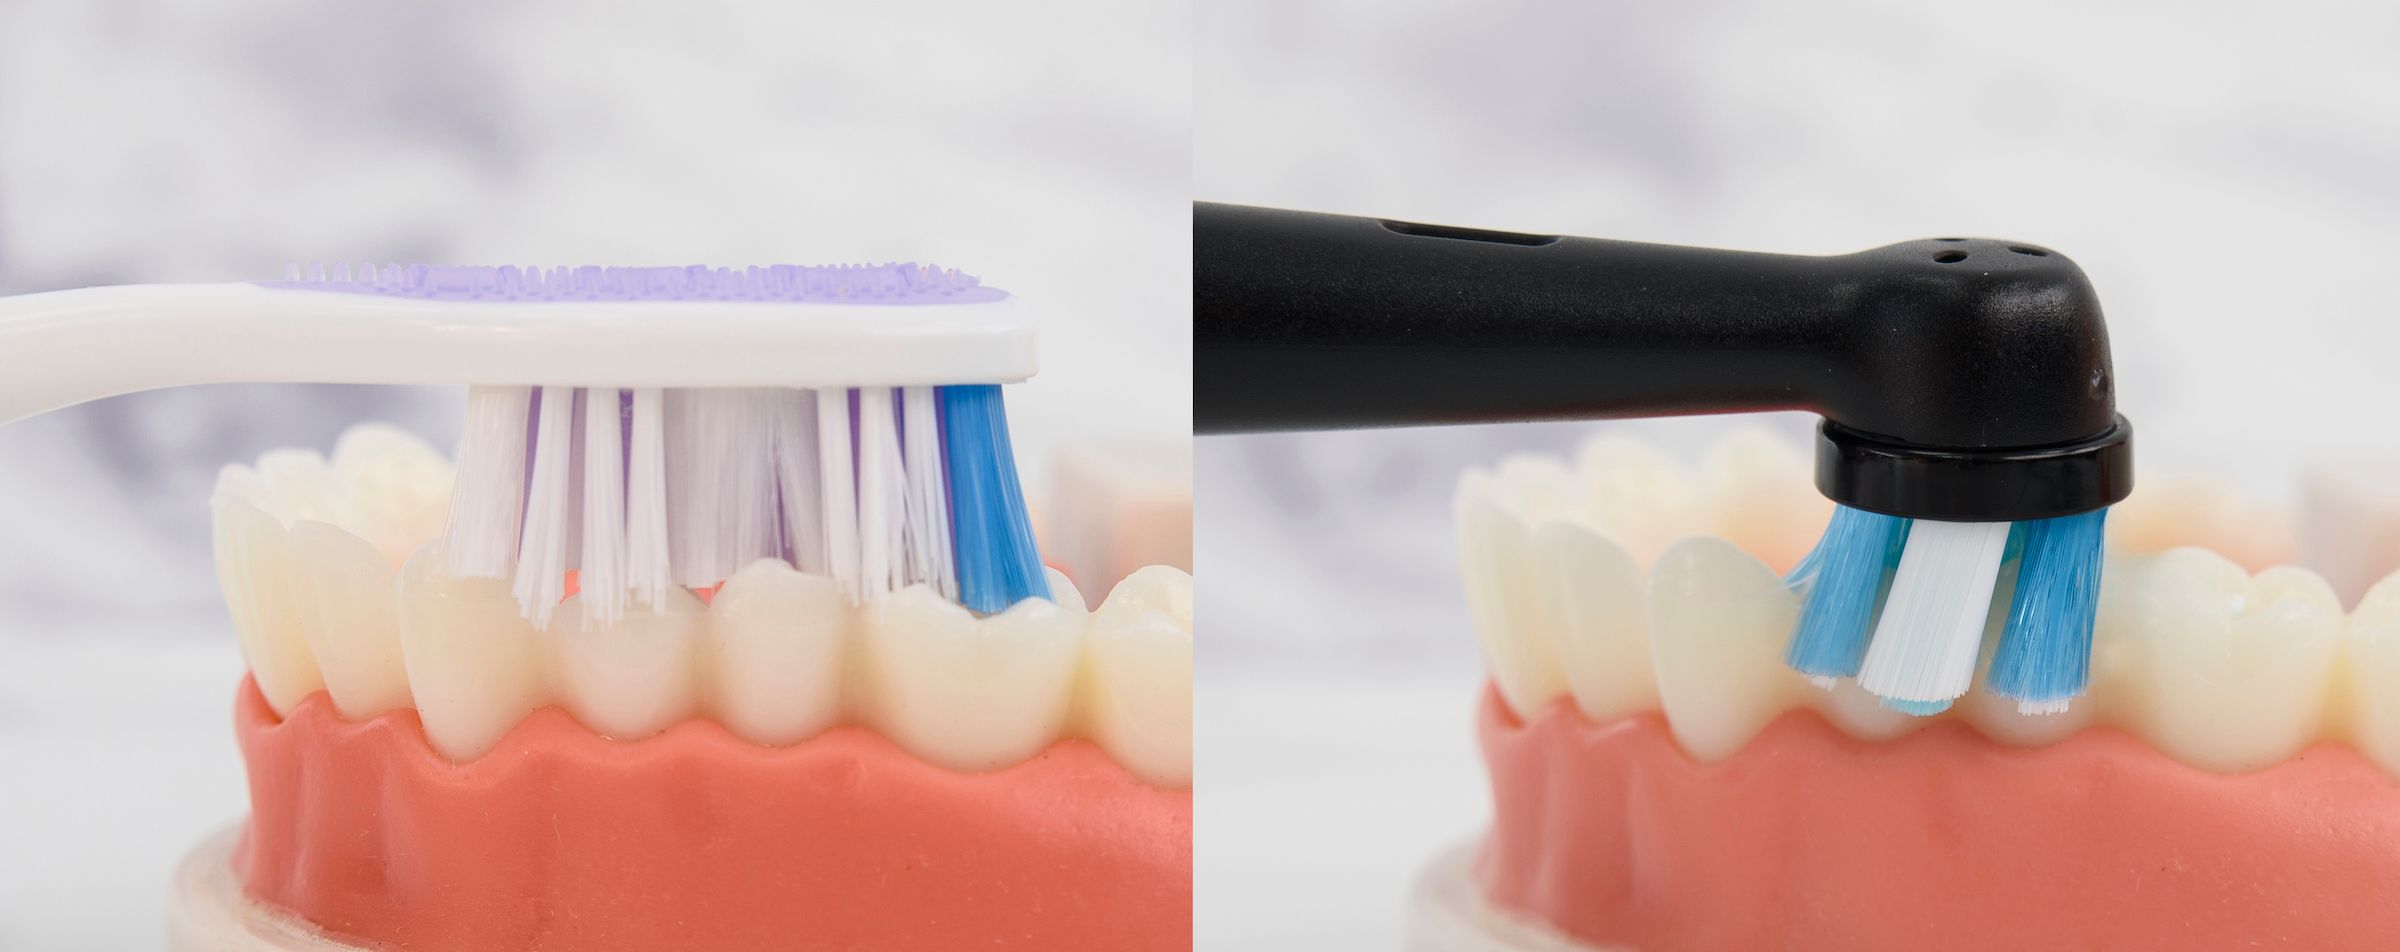 像全球最多牙醫推薦的Oral-B電動牙刷小圓頭就能夠深入死角，貼合半圓形牙齦溝，360º包覆清潔，如下圖圖示可以看到，對比左邊一般長柄牙刷，在刷牙時右邊的小圓頭刷毛能更全面包覆與清潔牙齒。